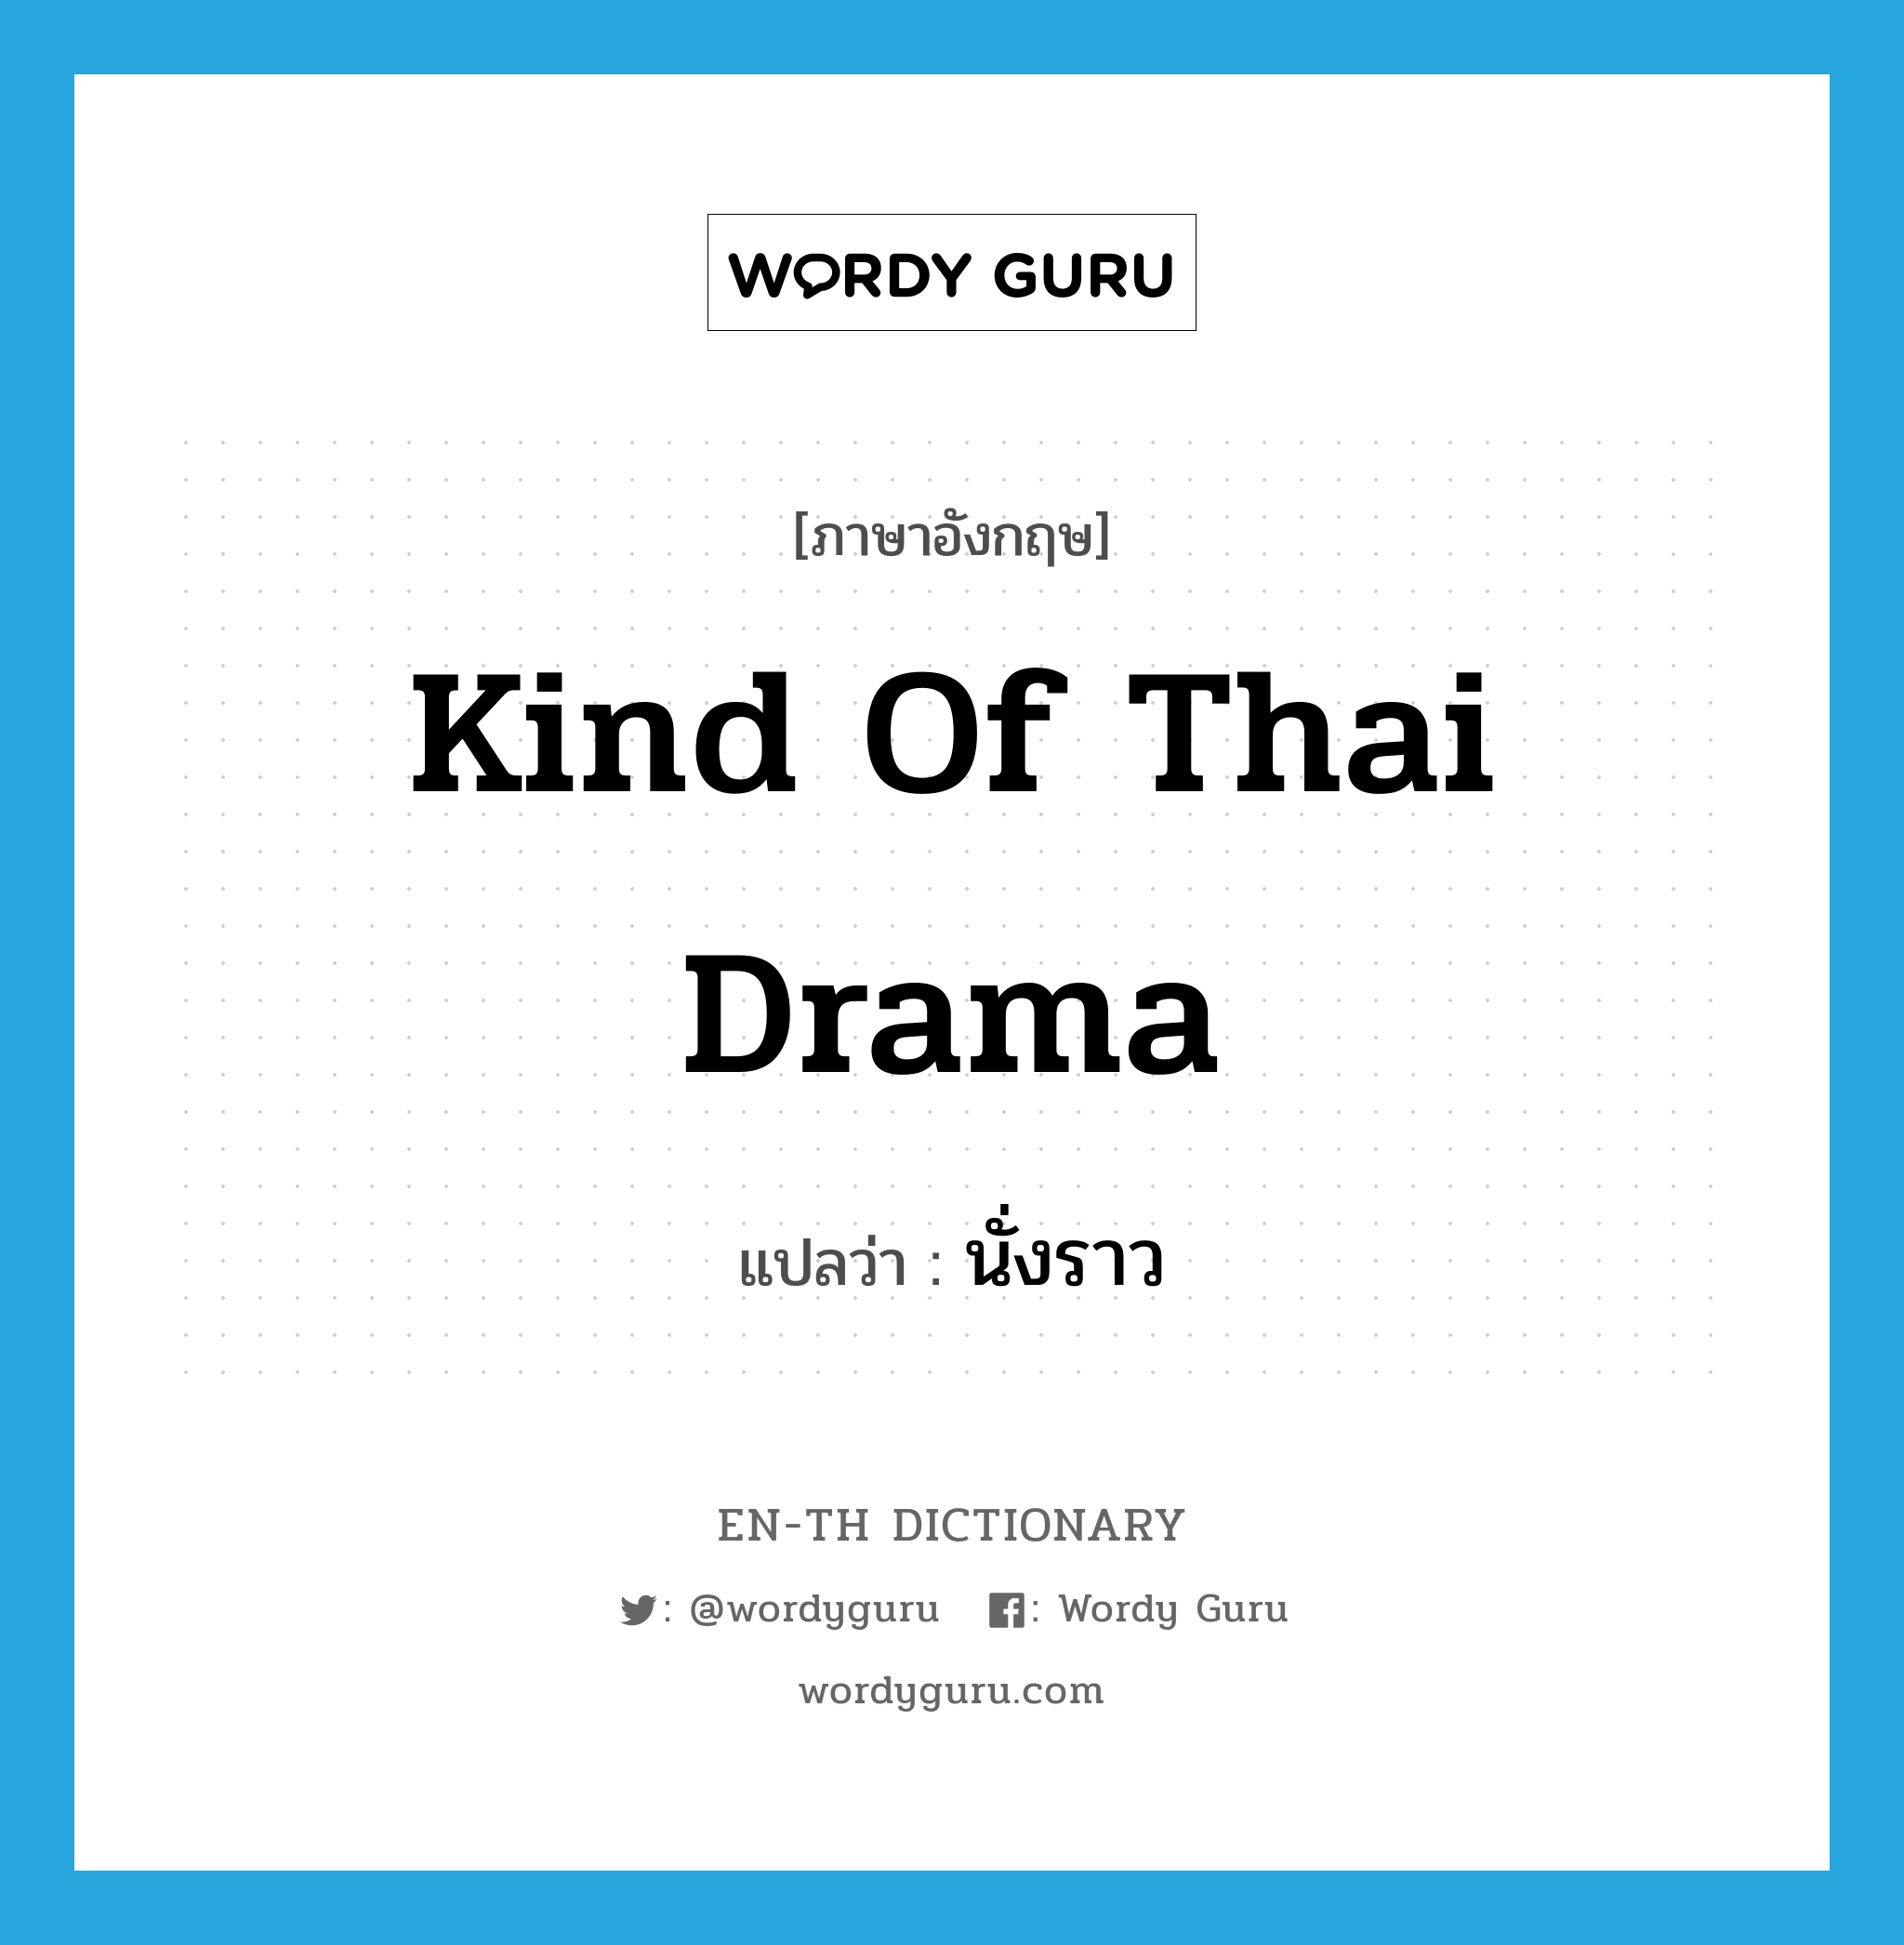 นั่งราว ภาษาอังกฤษ?, คำศัพท์ภาษาอังกฤษ นั่งราว แปลว่า kind of Thai drama ประเภท V หมวด V